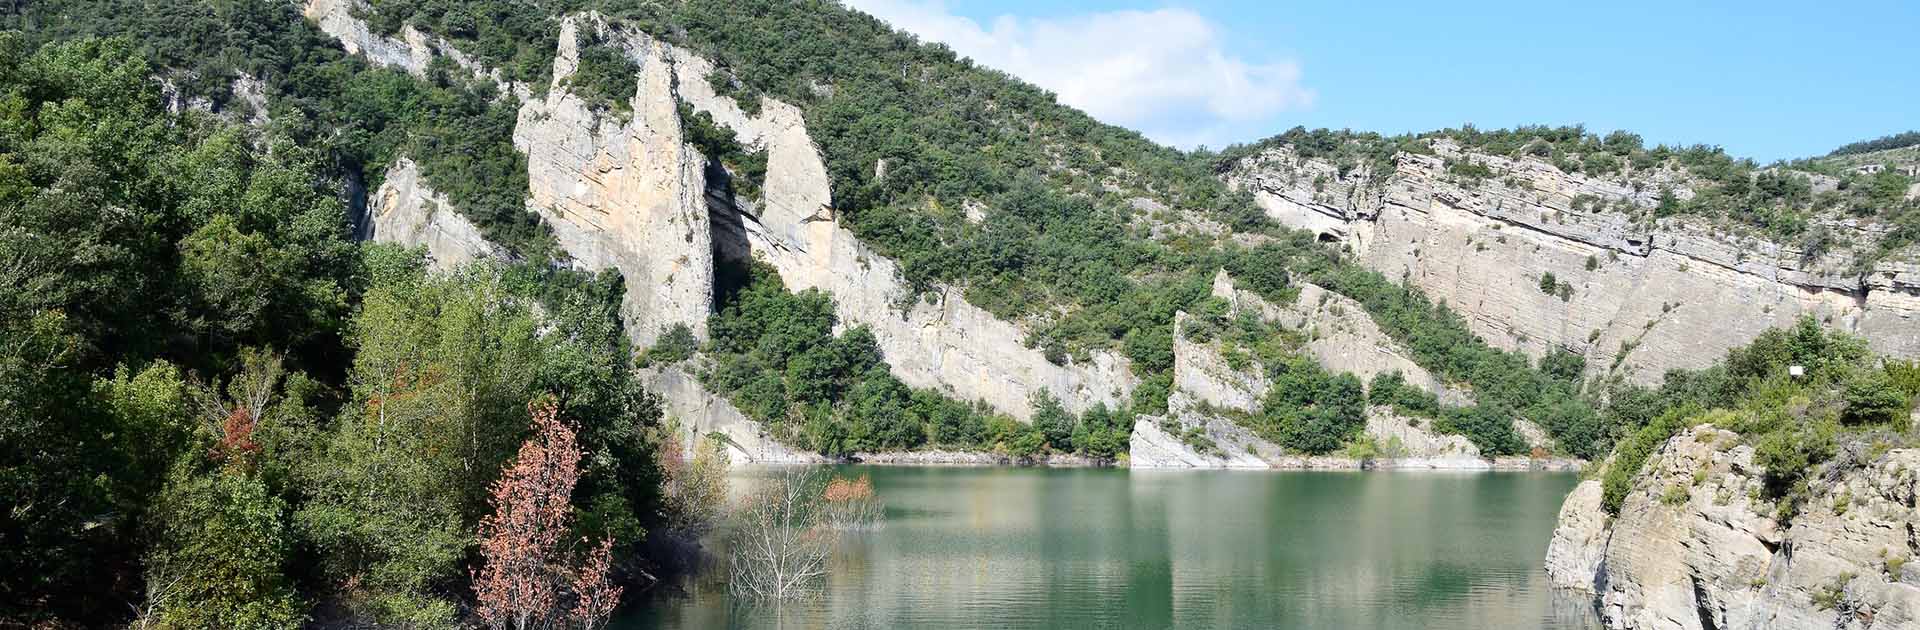 Imagen de montañas y vegetación del Embalse de Canelles ubicado entre las provincias de Hueca (Aragón) y Lleida (Cataluña) en España. Sequía